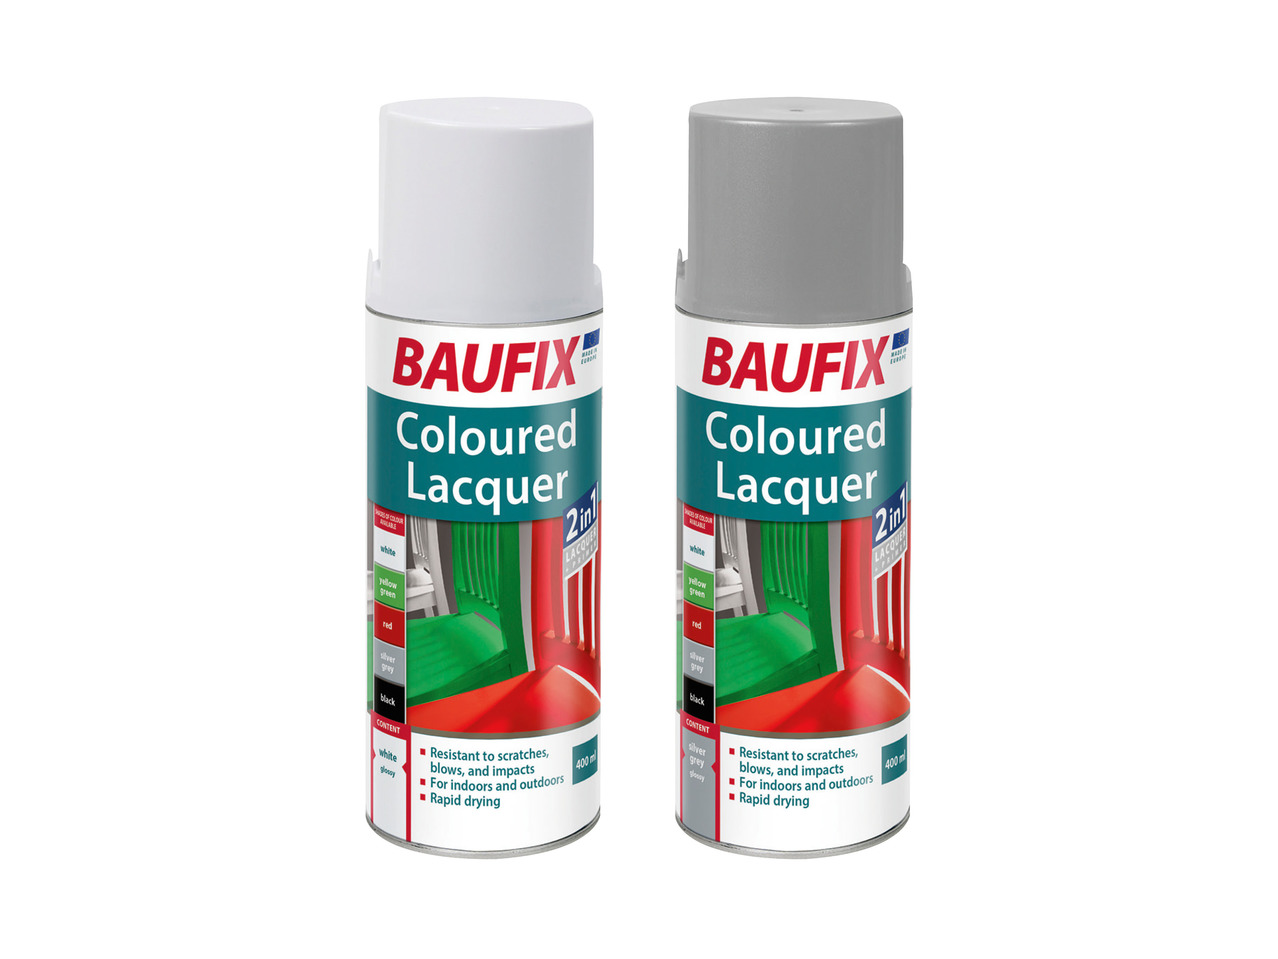 BAUFIX(R) Spraymaling